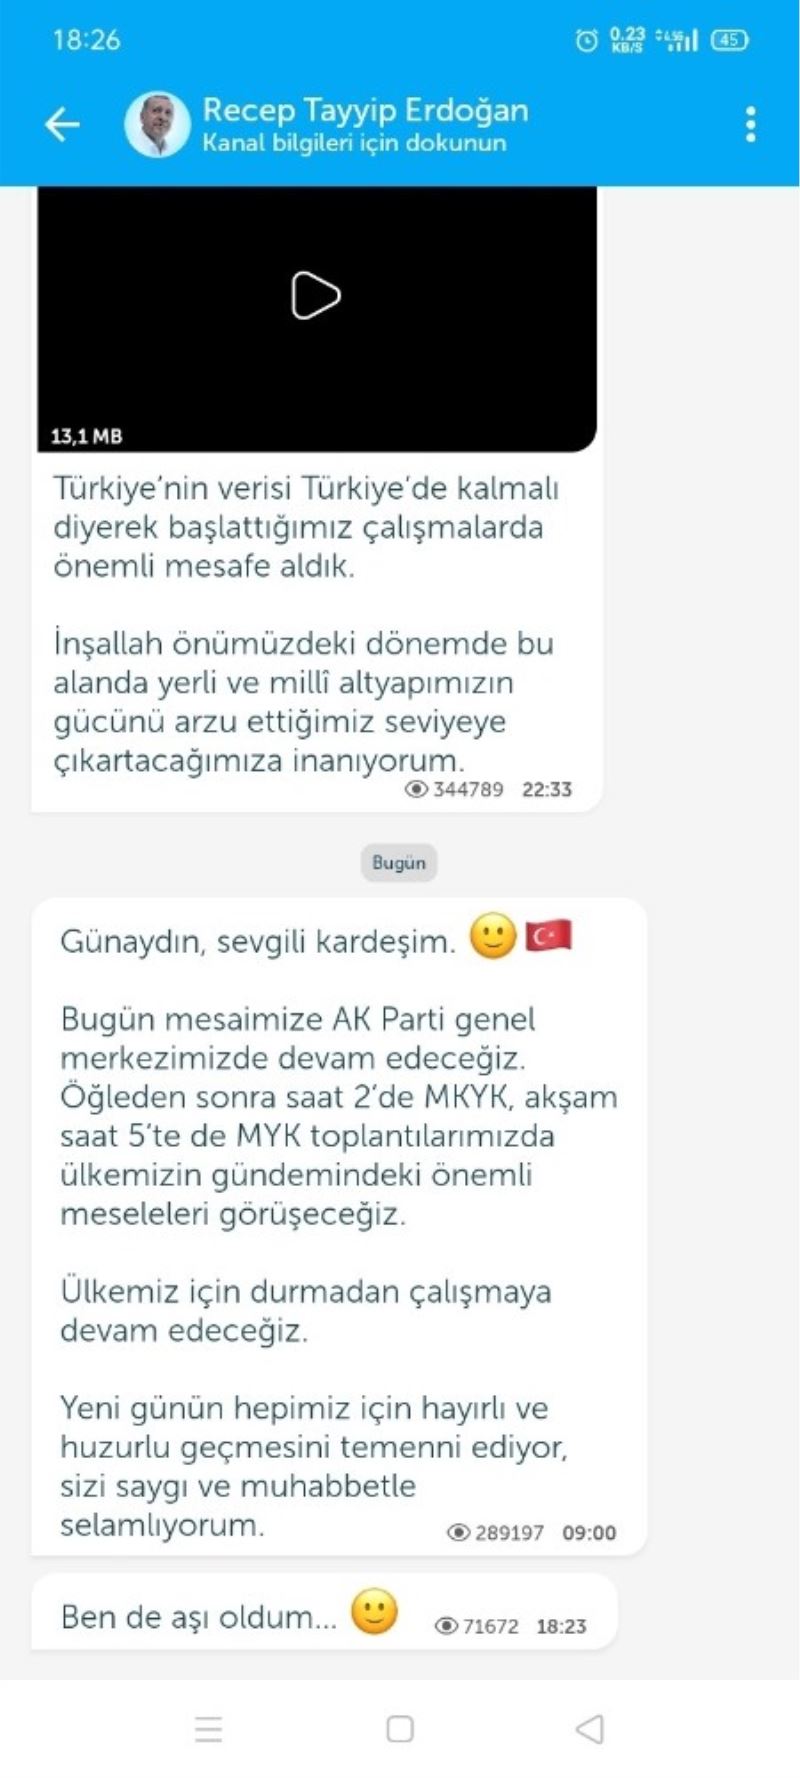 Cumhurbaşkanı Recep Tayyip Erdoğan, Telegram ve Bip üzerinden, 